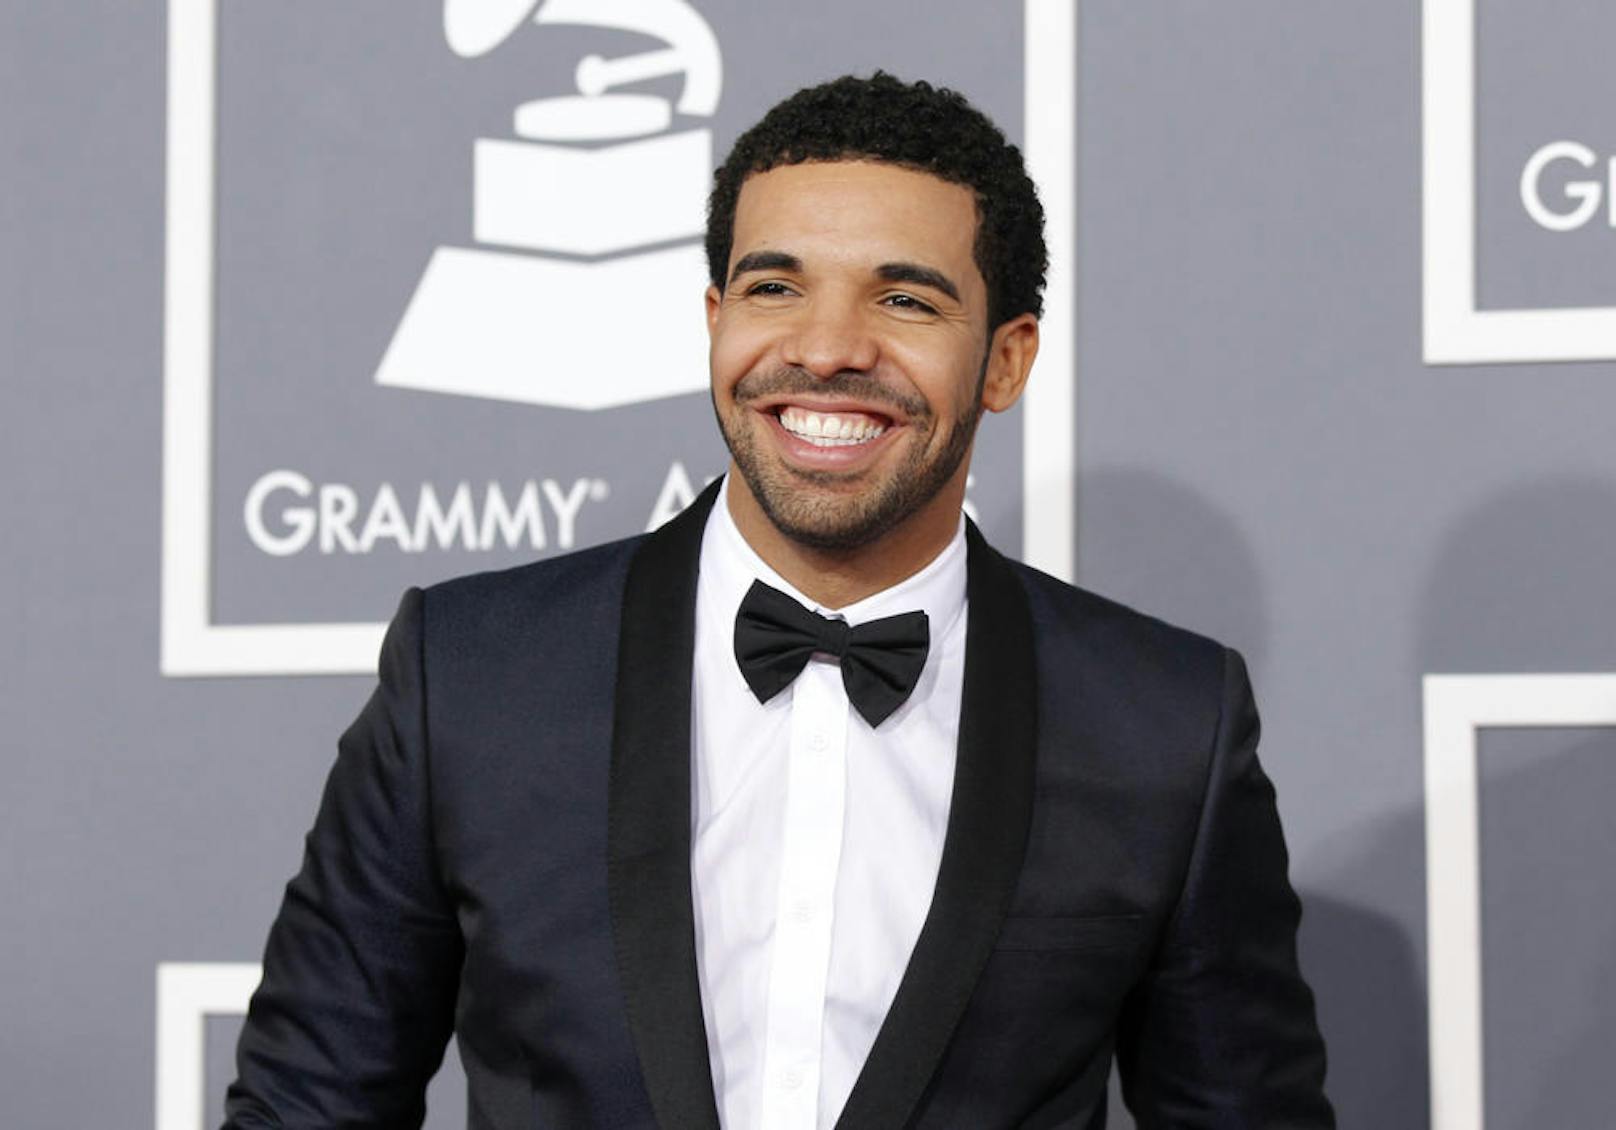 <b>2</b>
Drake gelang es, seine Single "Nice For What" Anfang 2018 auf Platz eins der britischen Charts zu platzieren, nur wenige Wochen nachdem sein Song "God's Plan" bereits die Hitparade anführte.